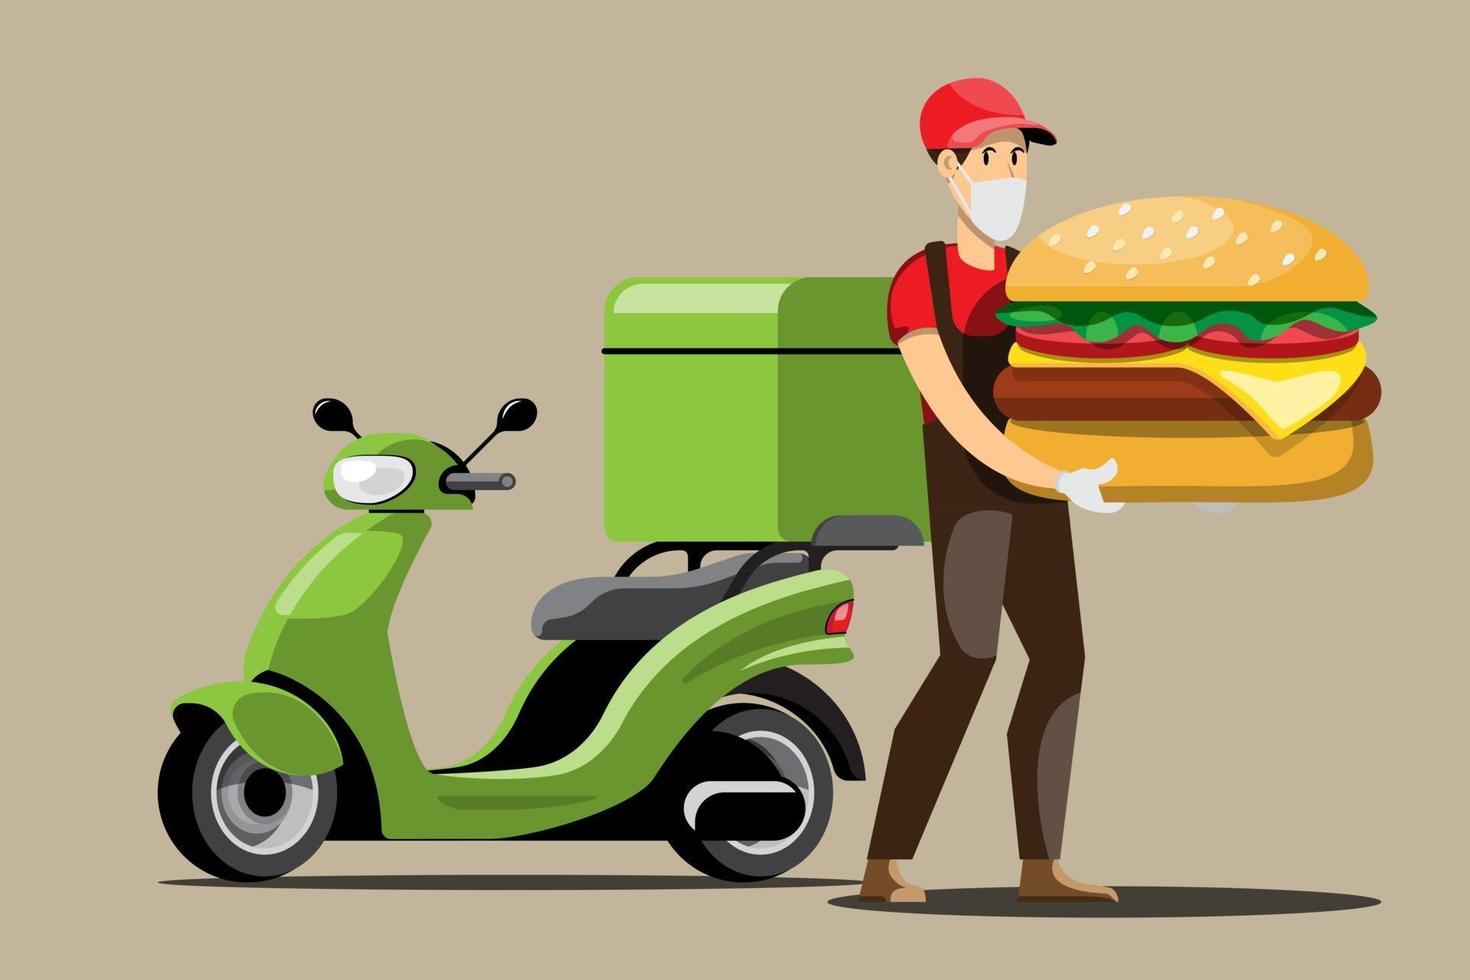 Grandes iconos de colores de vectores de motocicletas aisladas, ilustraciones planas de entrega por motocicletas a través de la ubicación de seguimiento gps. entrega en bicicleta, entrega de hamburguesas y comida, entrega instantánea, entrega en línea.